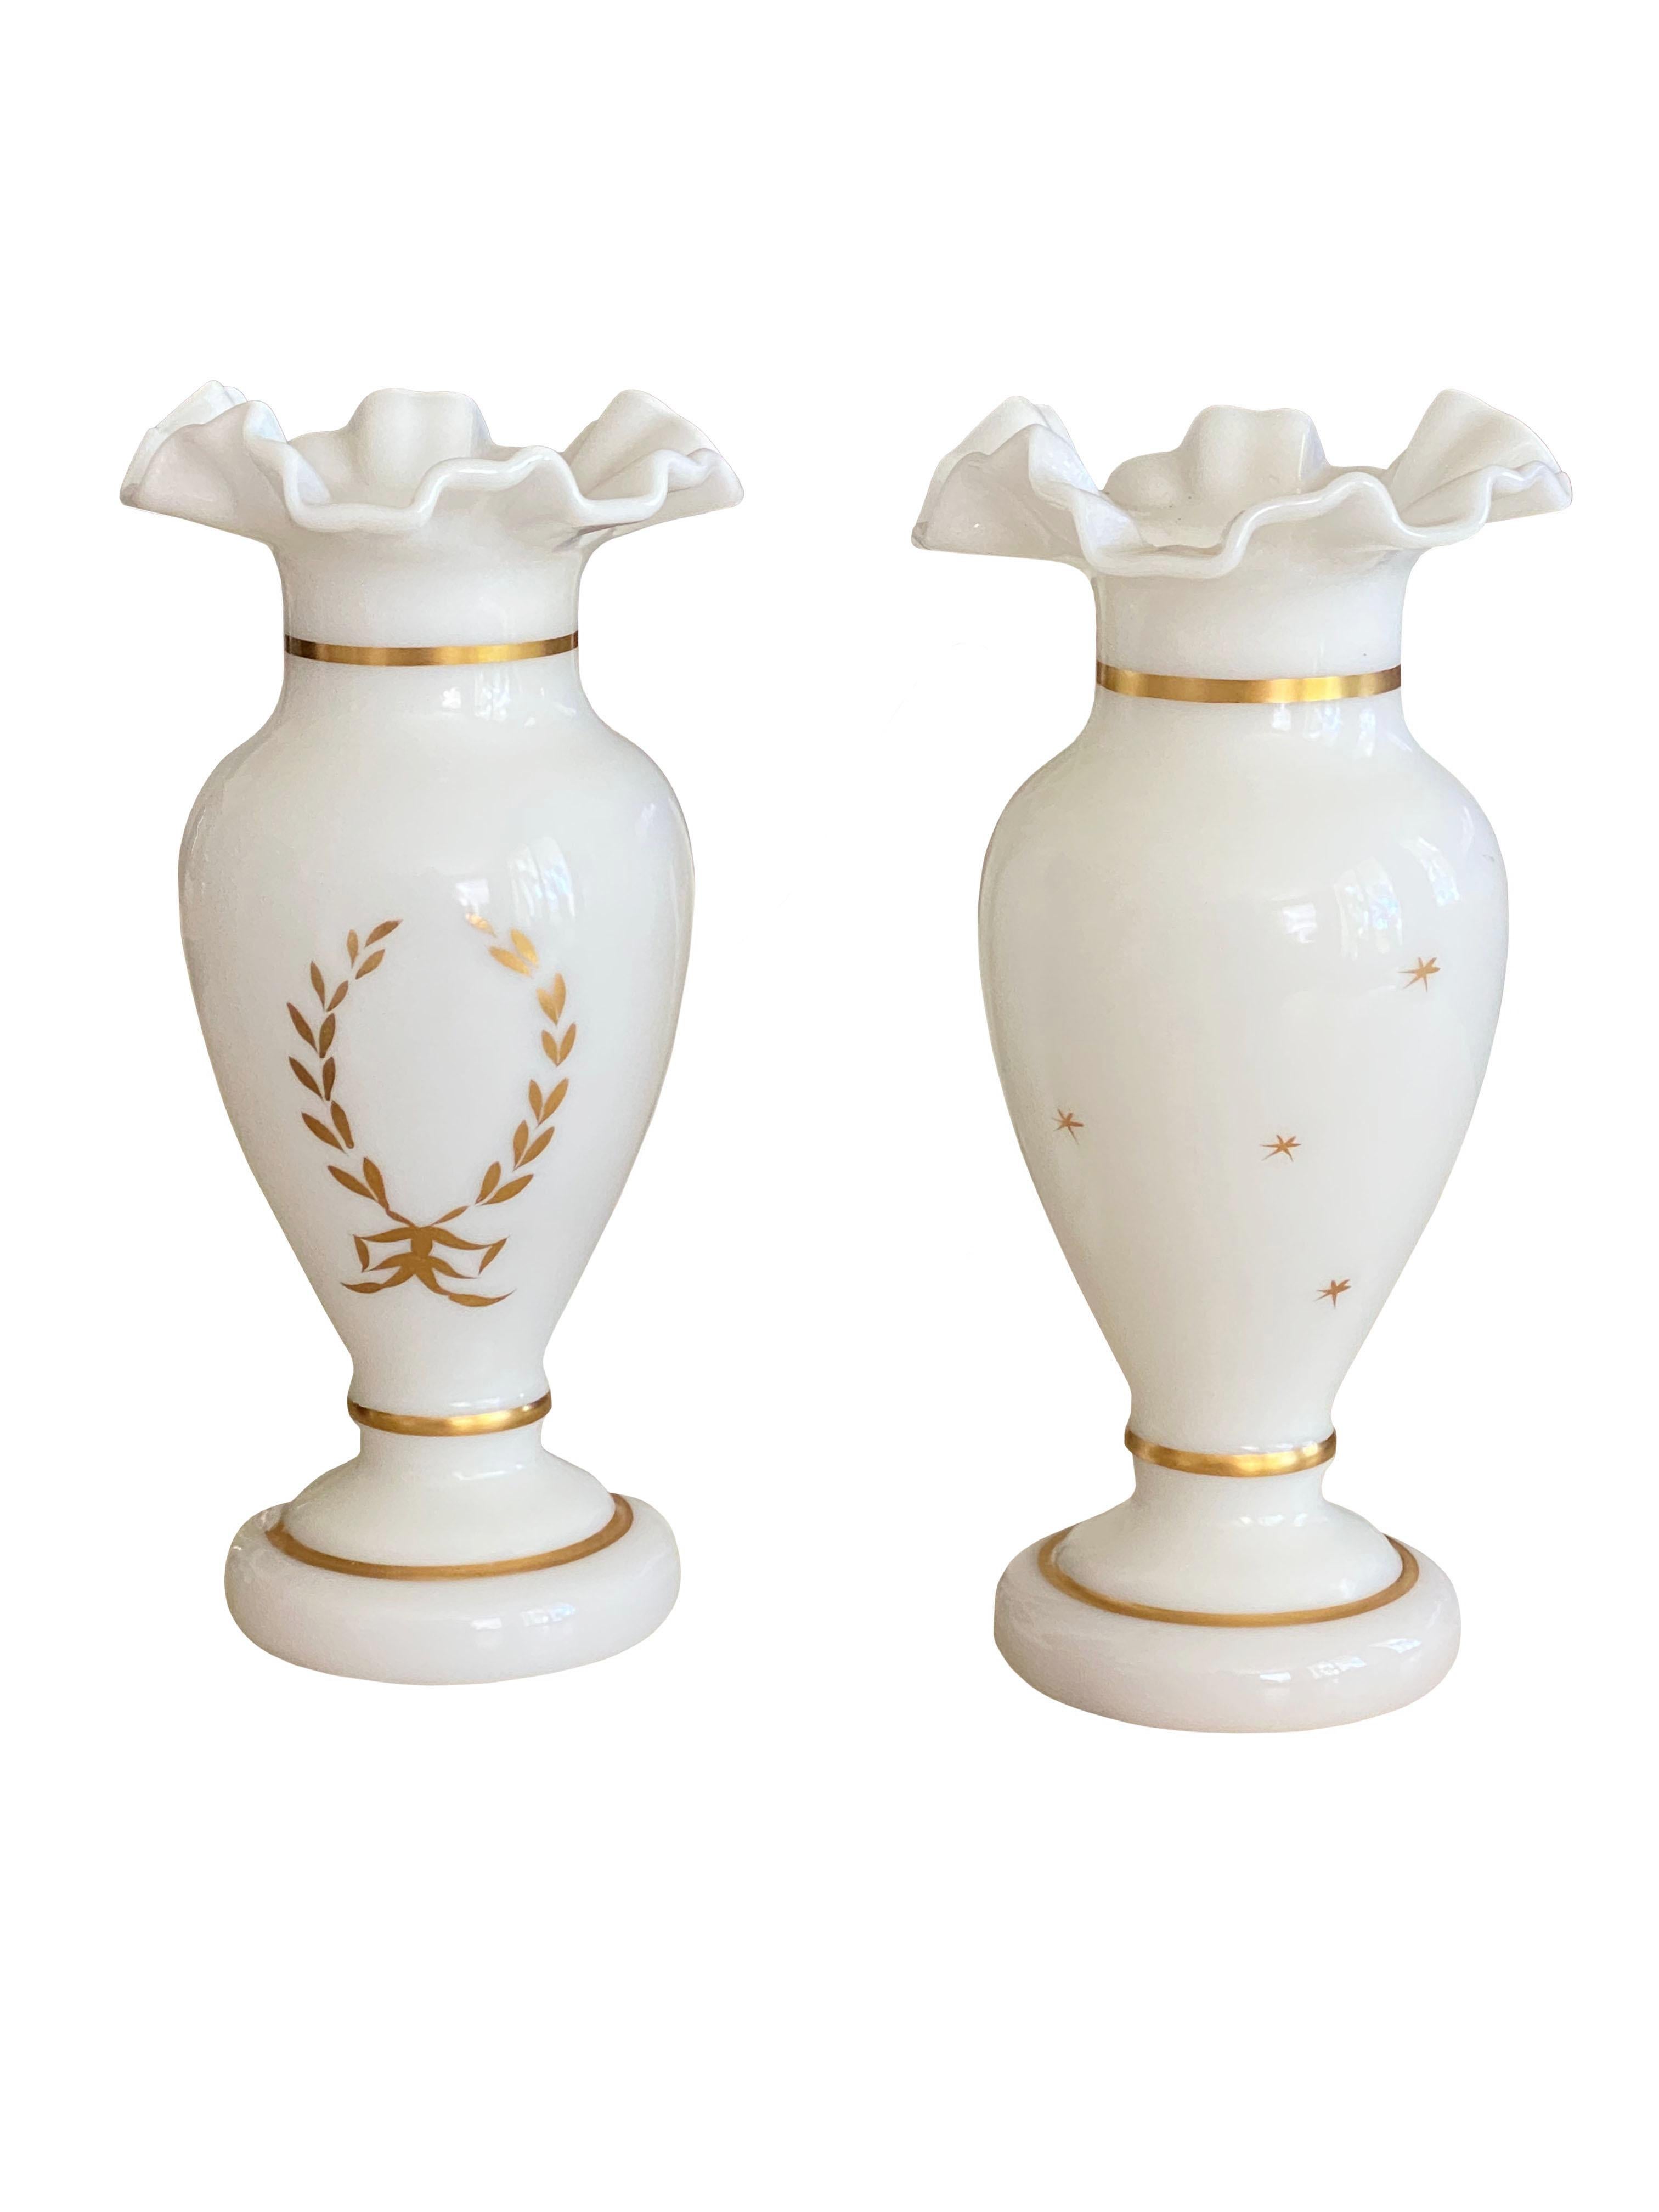 Une très jolie paire de vases anciens en opaline blanche avec un rebord volant. Garniture dorée peinte à la main et couronne de laurier avec nœud sur le devant et étoiles éparses sur le dos.